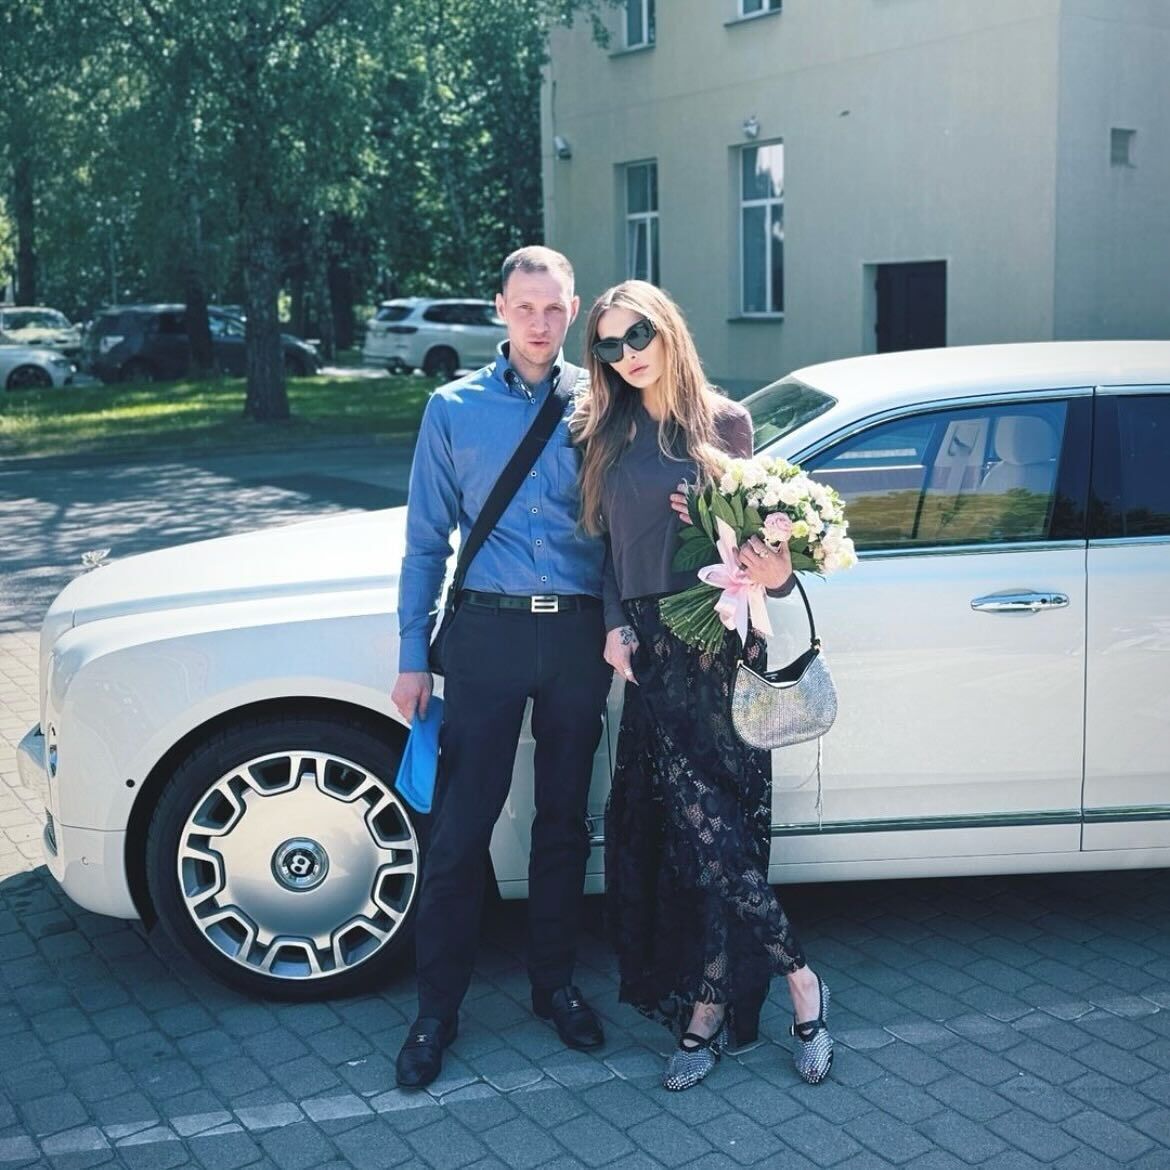 Українська супермодель Сніжана Онопка вийшла заміж за "найкращого чоловіка в світі". Фото
